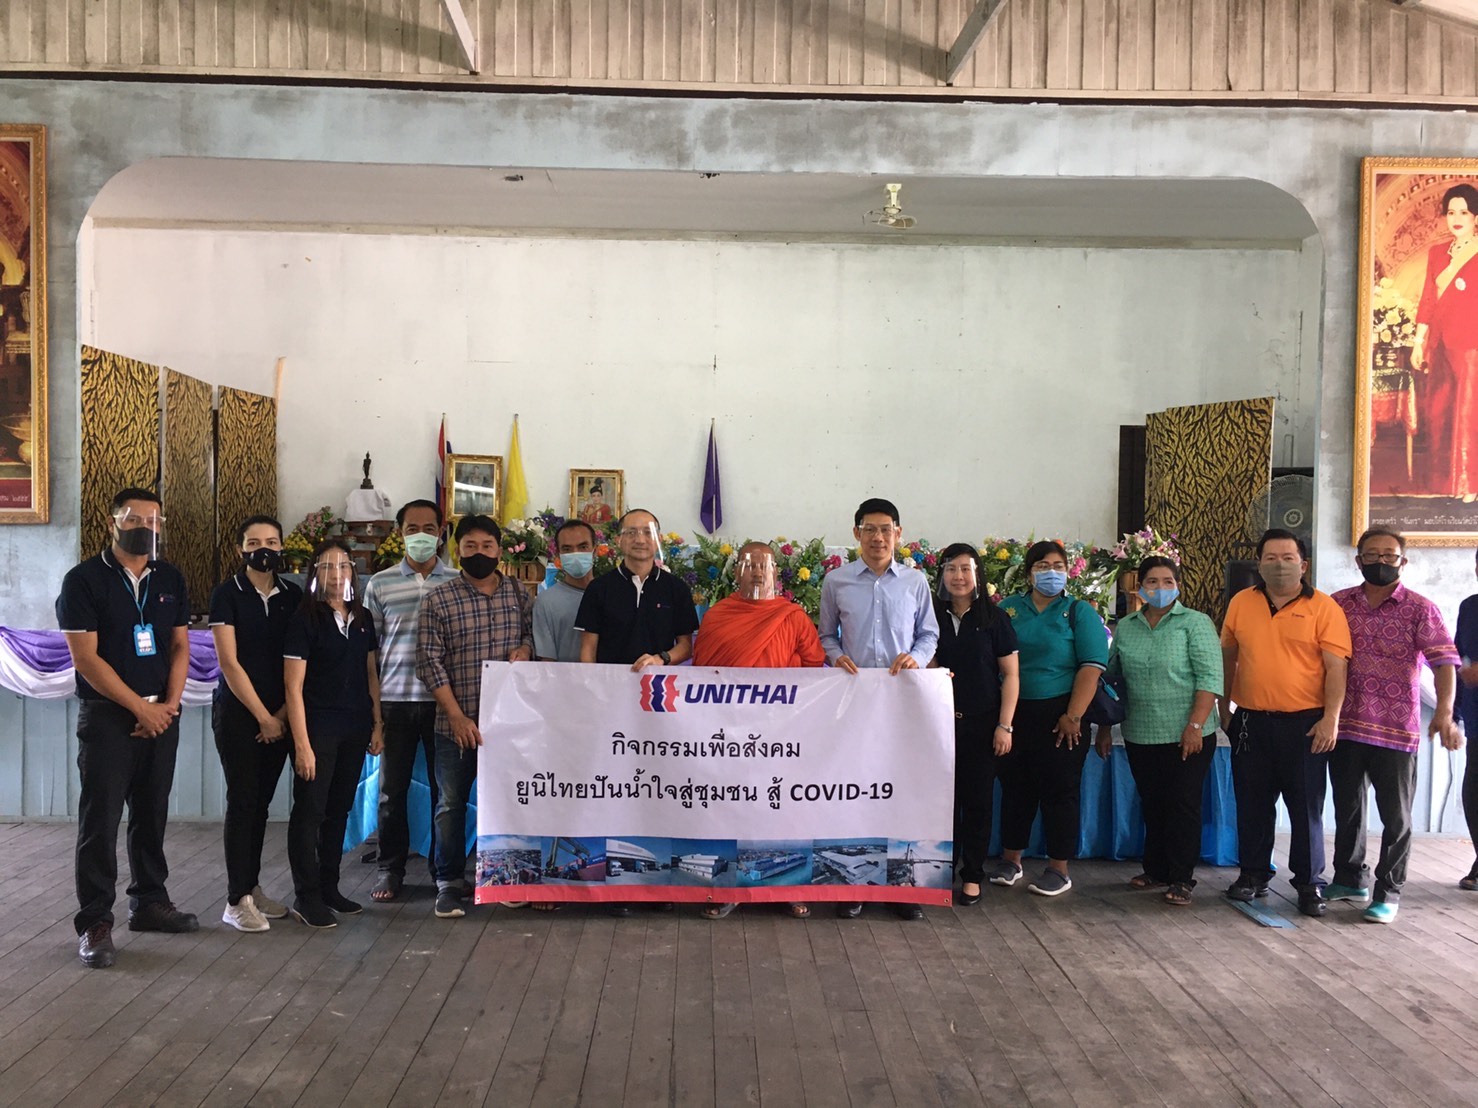 กลุ่มยูนิไทย จัดกิจกรรมยูนิไทย ปันน้ำใจสู่ชุมชน สู้ภัยโควิด-19 มอบถุงยังชีพ ให้กับผู้ที่ได้รับผลกระทบจาก COVID-19 ในชุมชนบางเสาธง